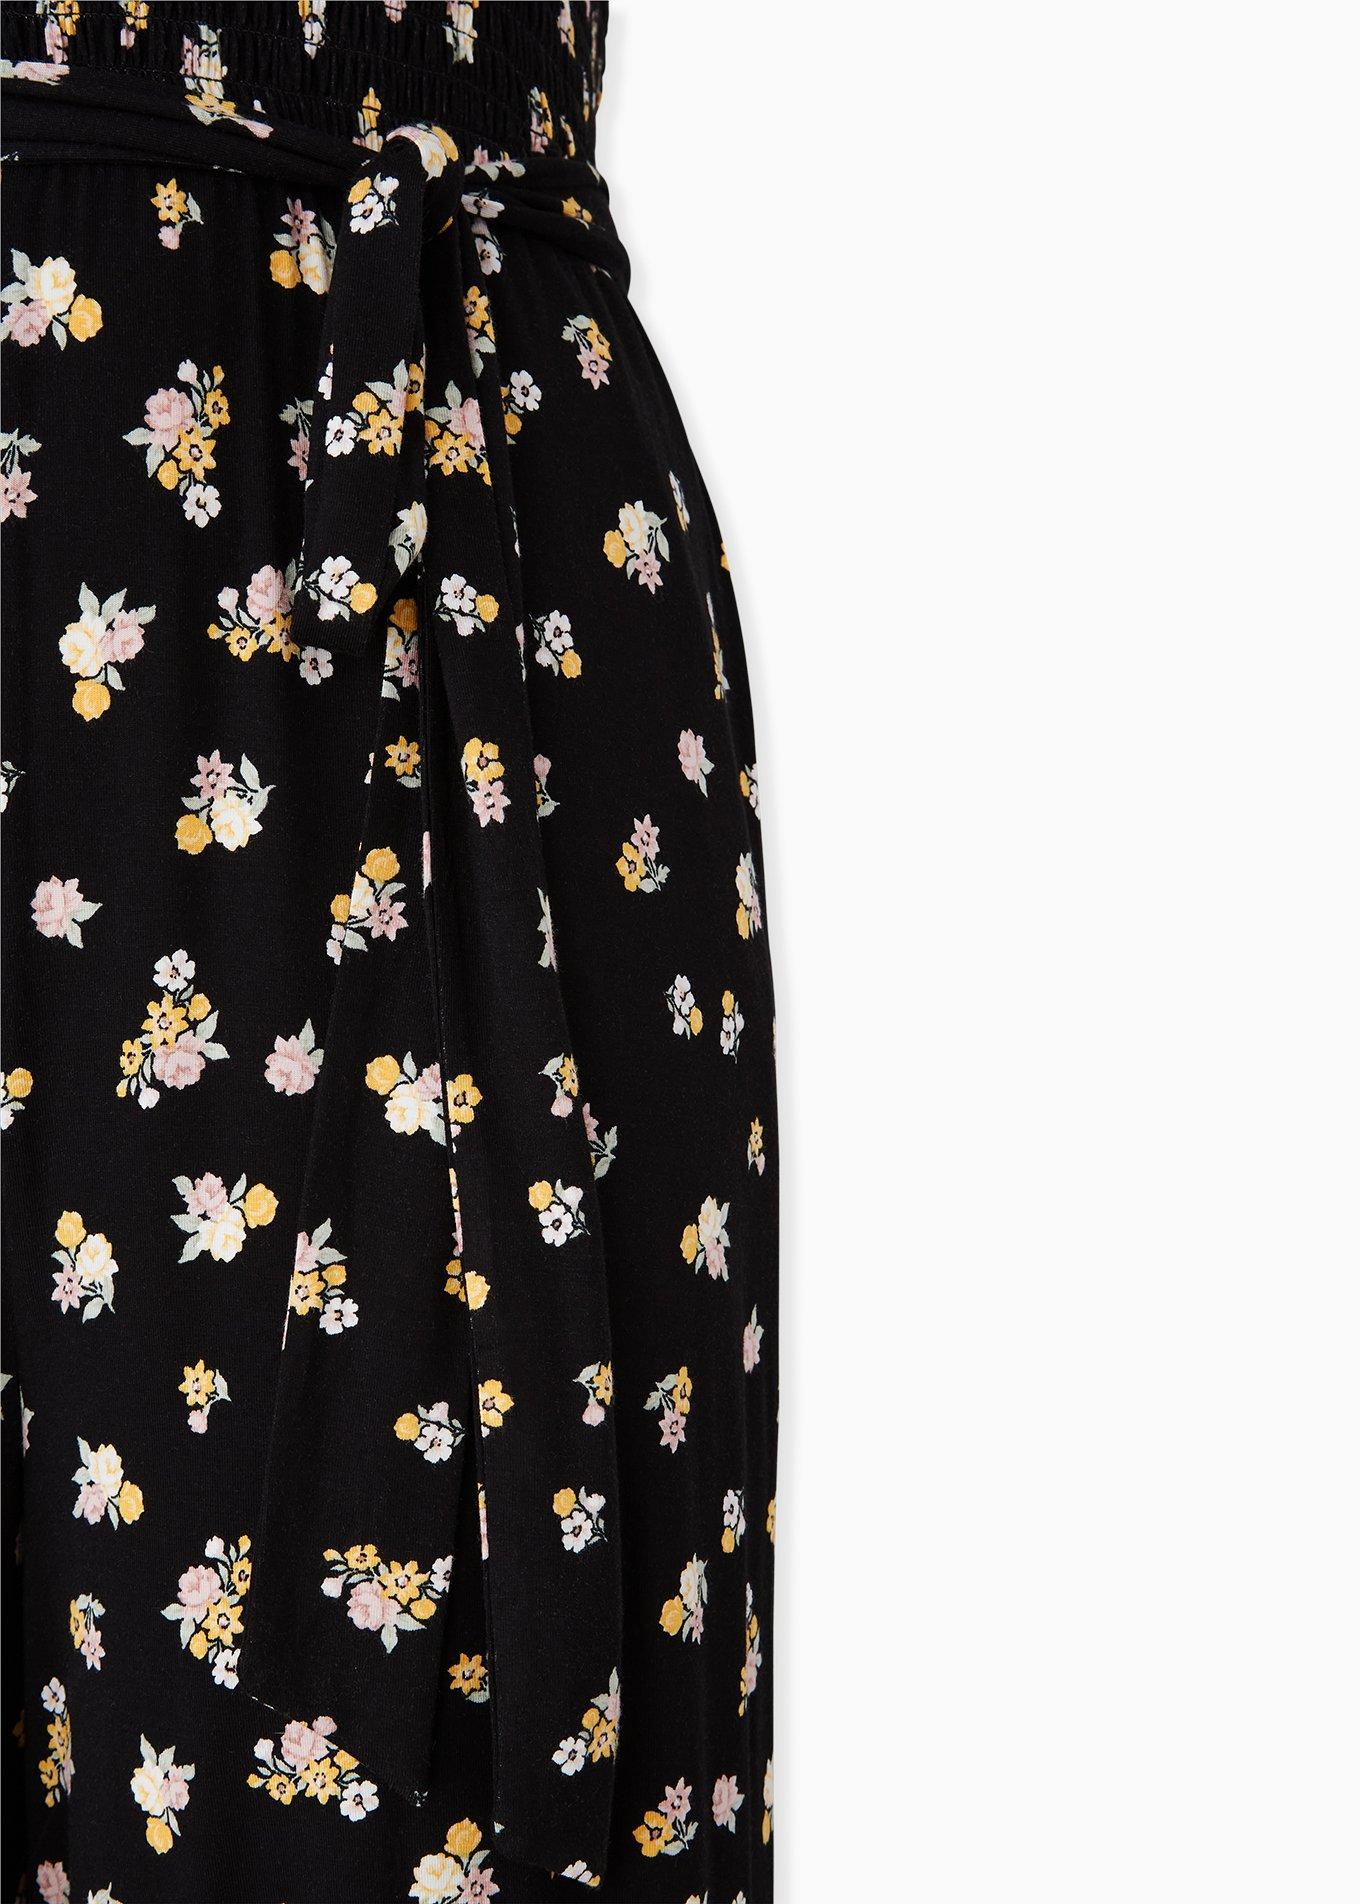 Plus Size - Super Soft Black Floral Smocked Culotte Jumpsuit - Torrid